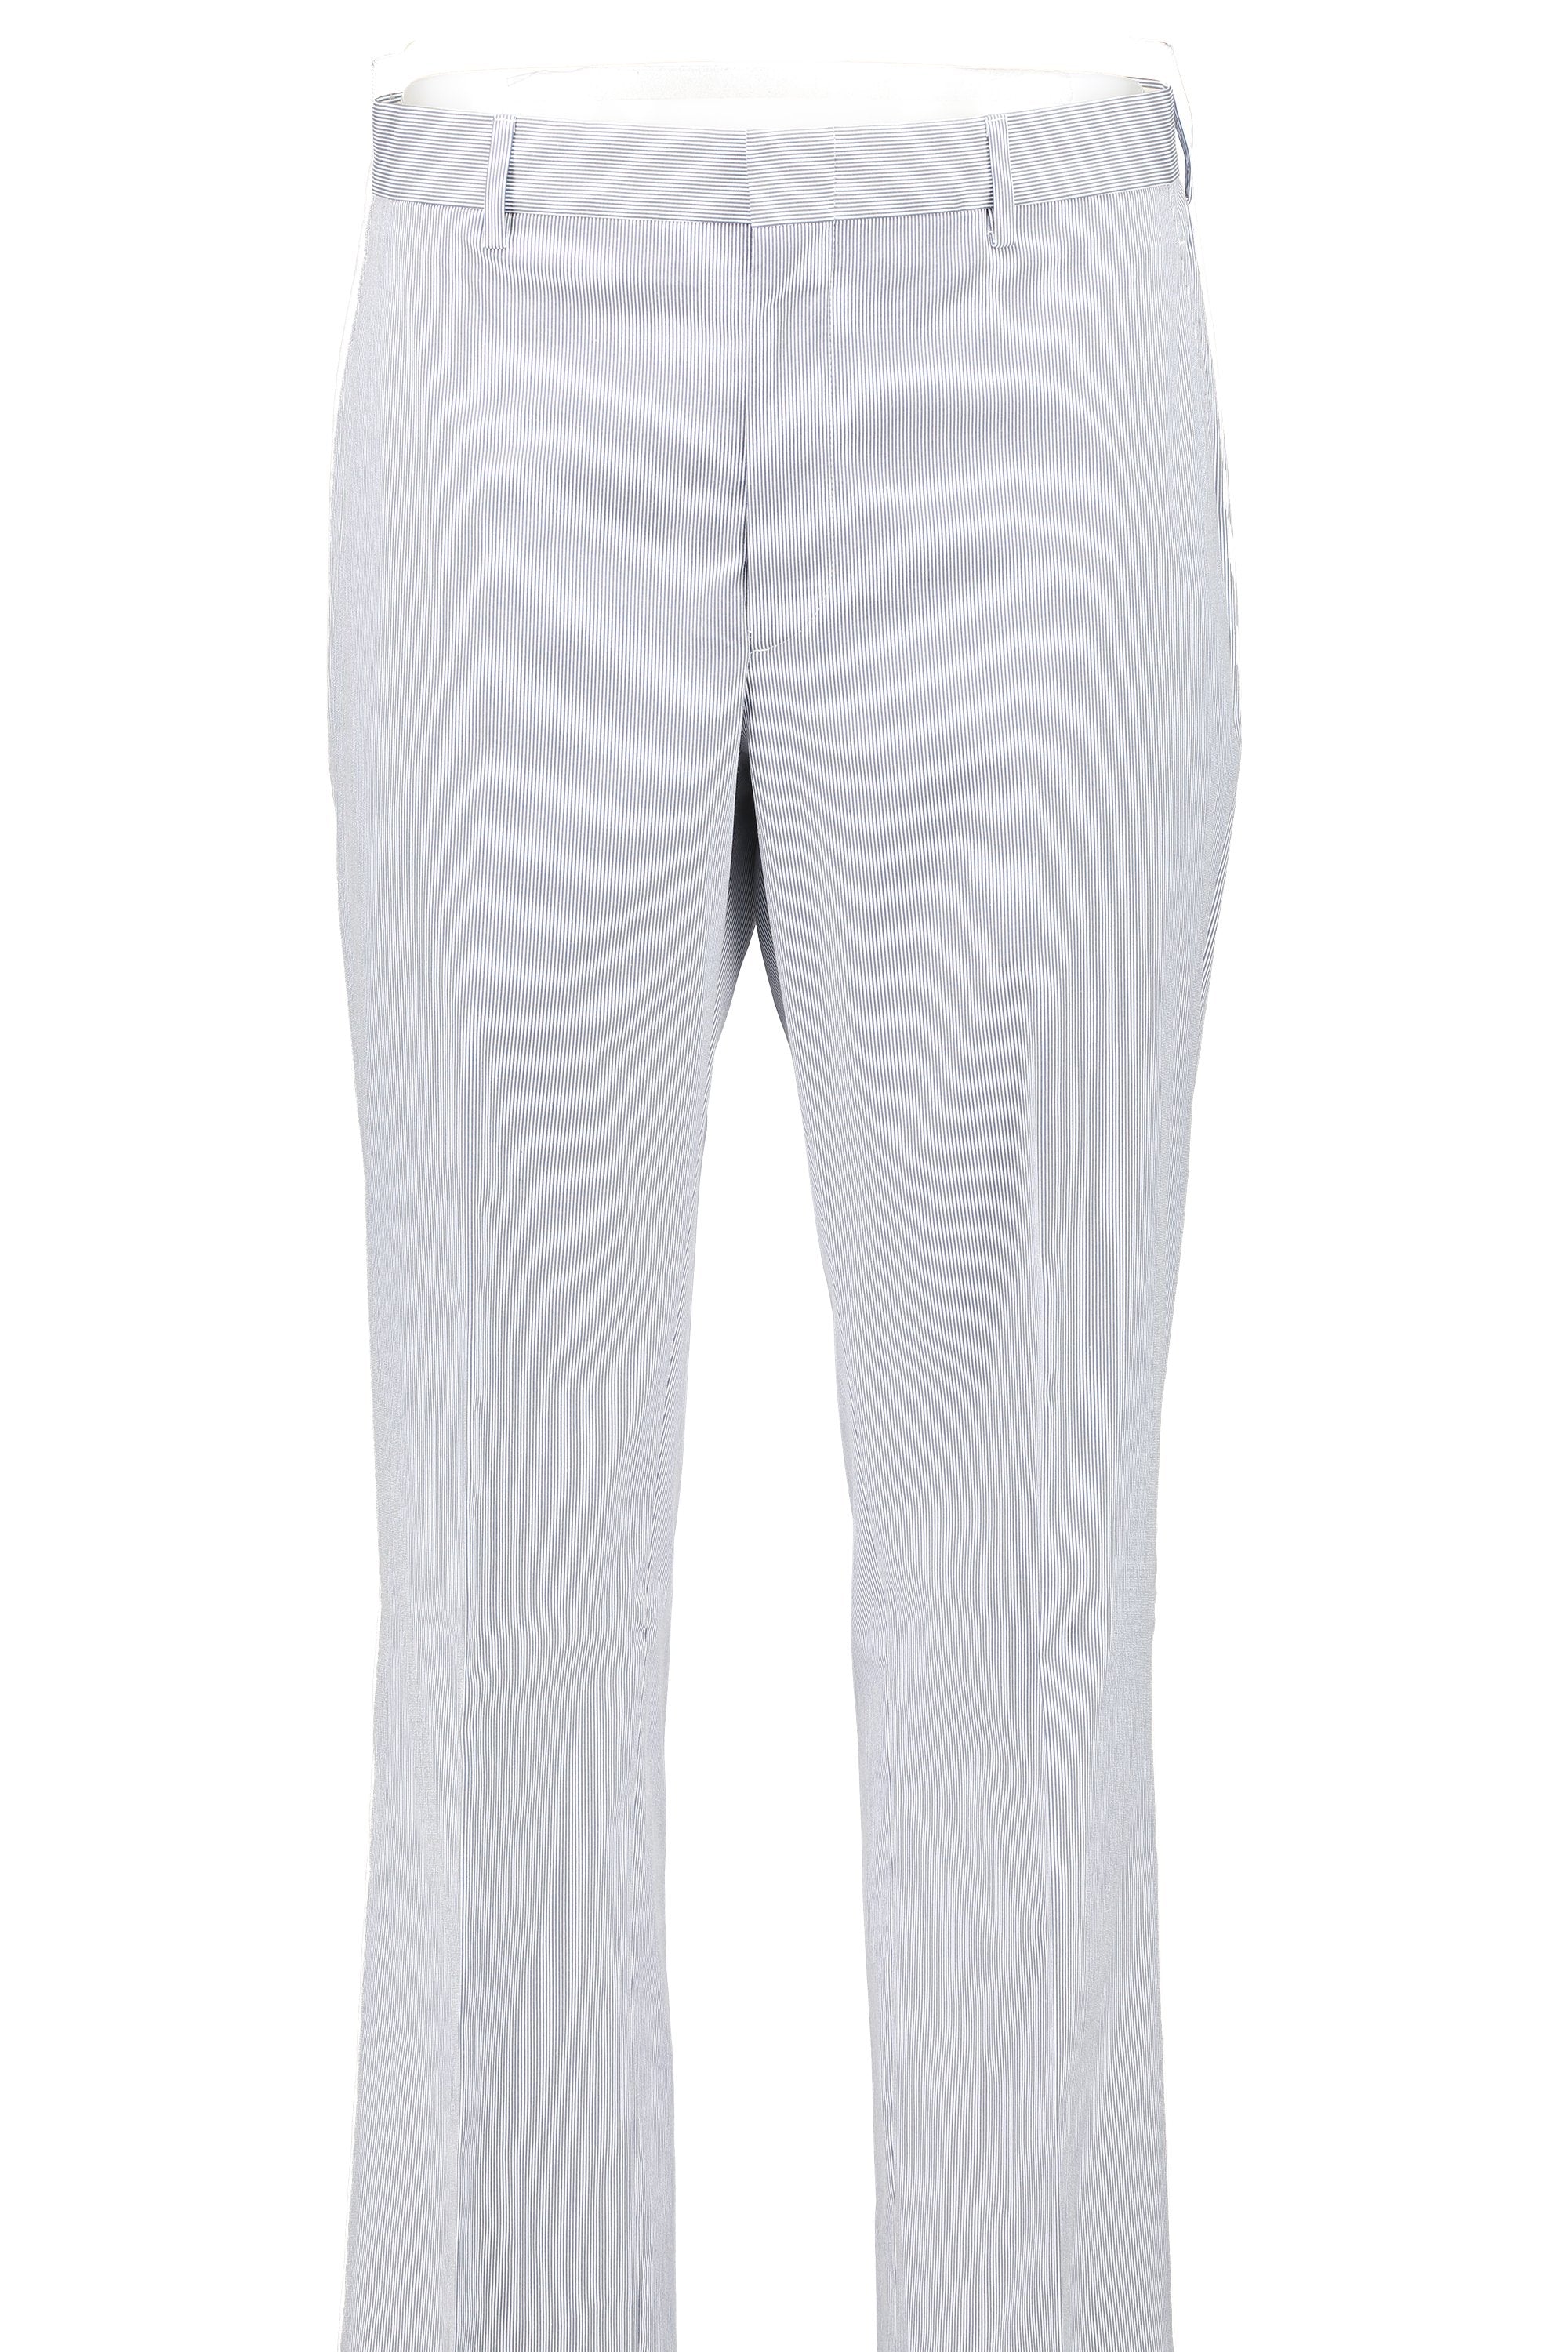 Men's Flat Front Pant - Suit Separate Classic Cut Blue/White Pincord 100% COTTON